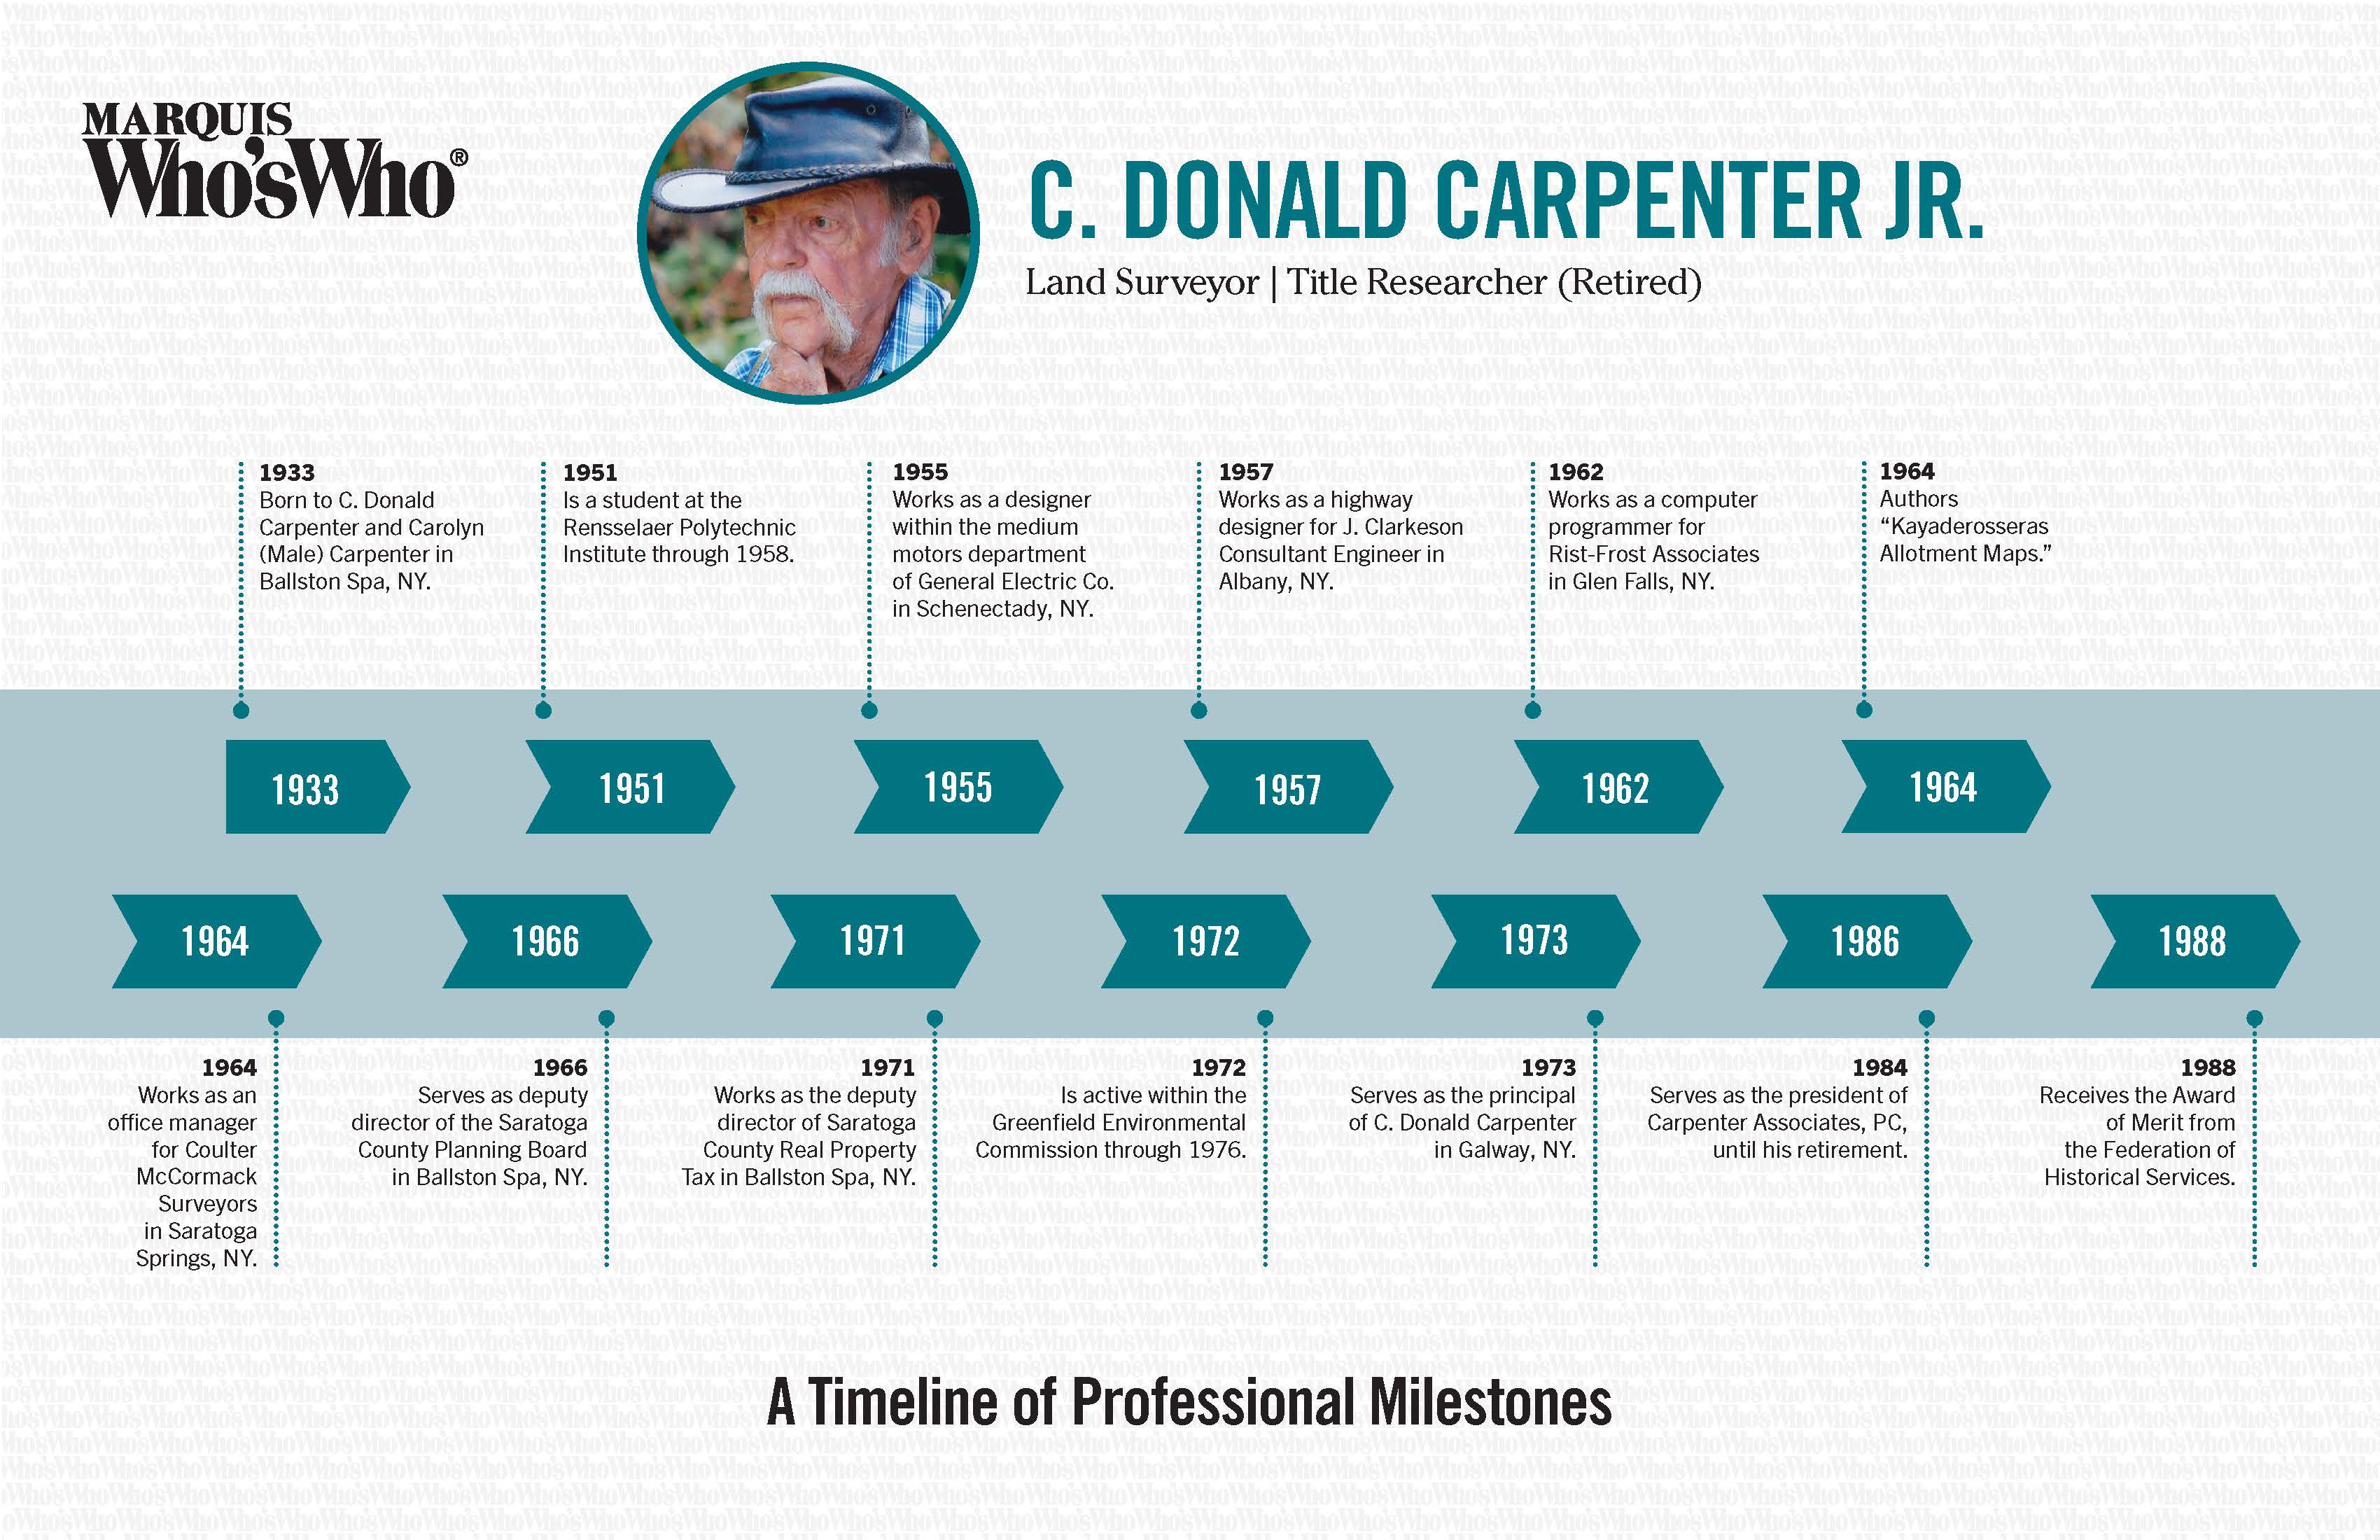 C. Donald Carpenter